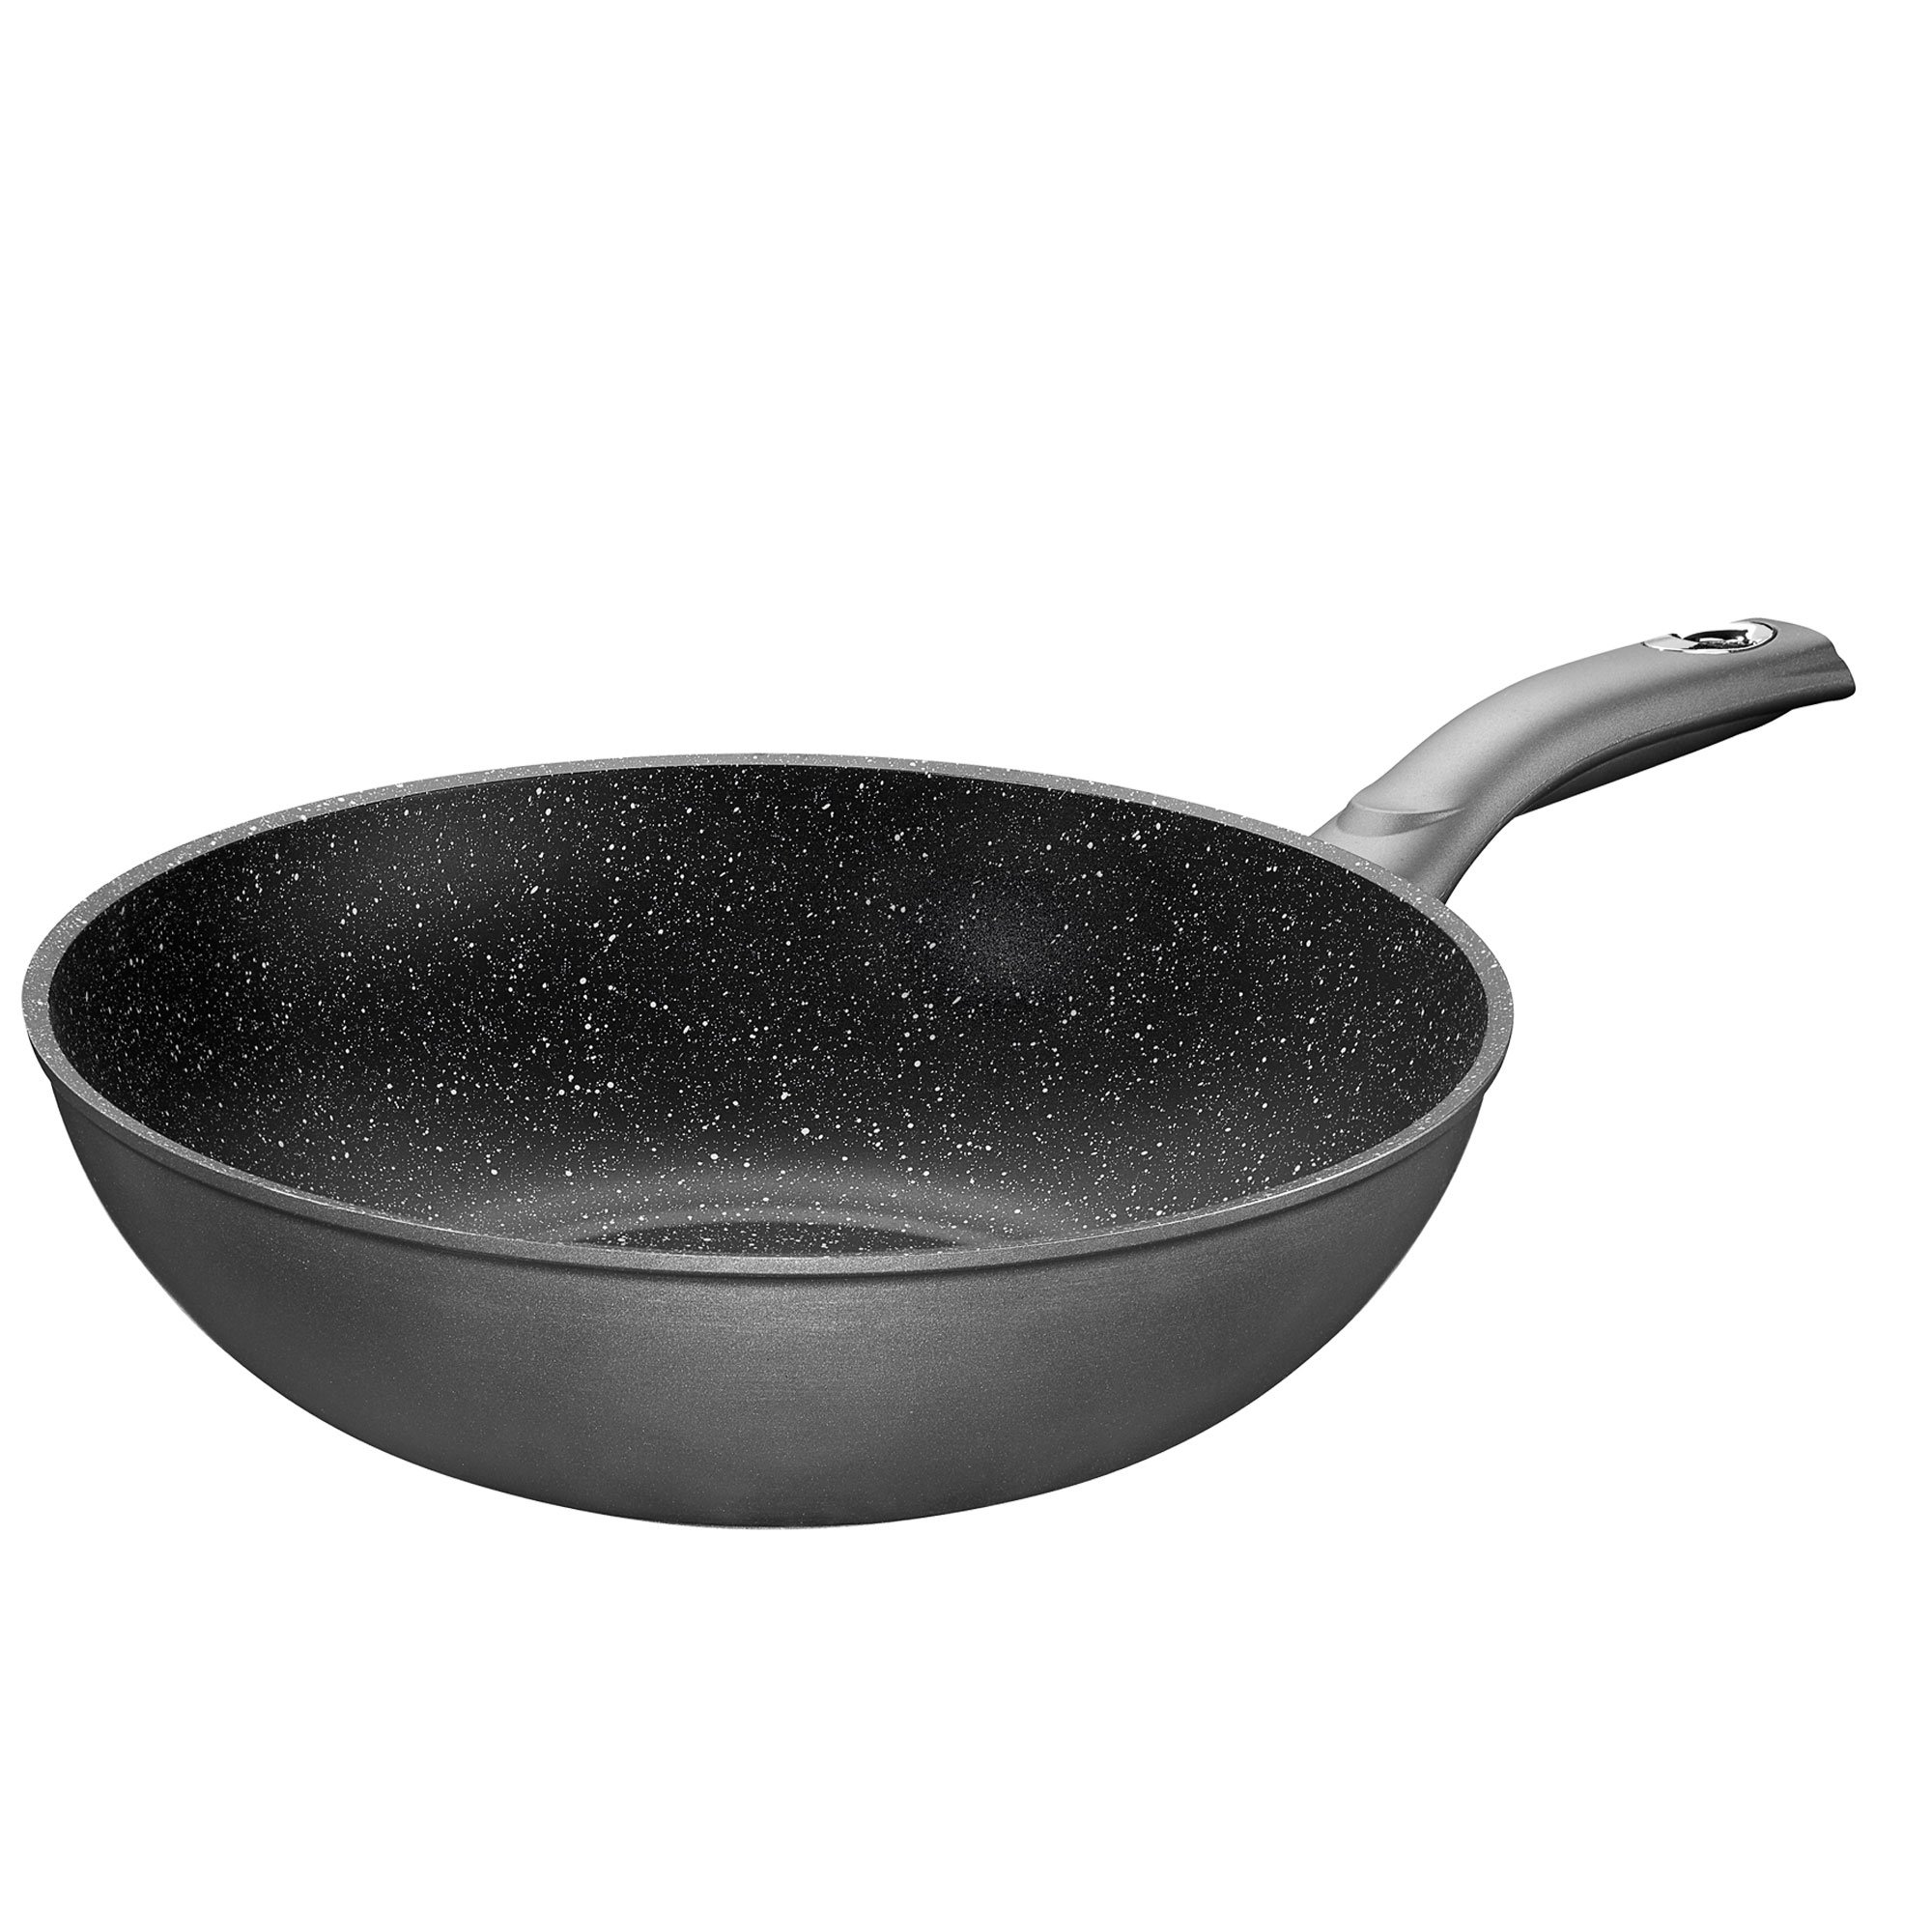 STONELINE® Gourmundo poêle à wok 30 cm, Made in Germany, wok antiadhésif, convient pour l'induction